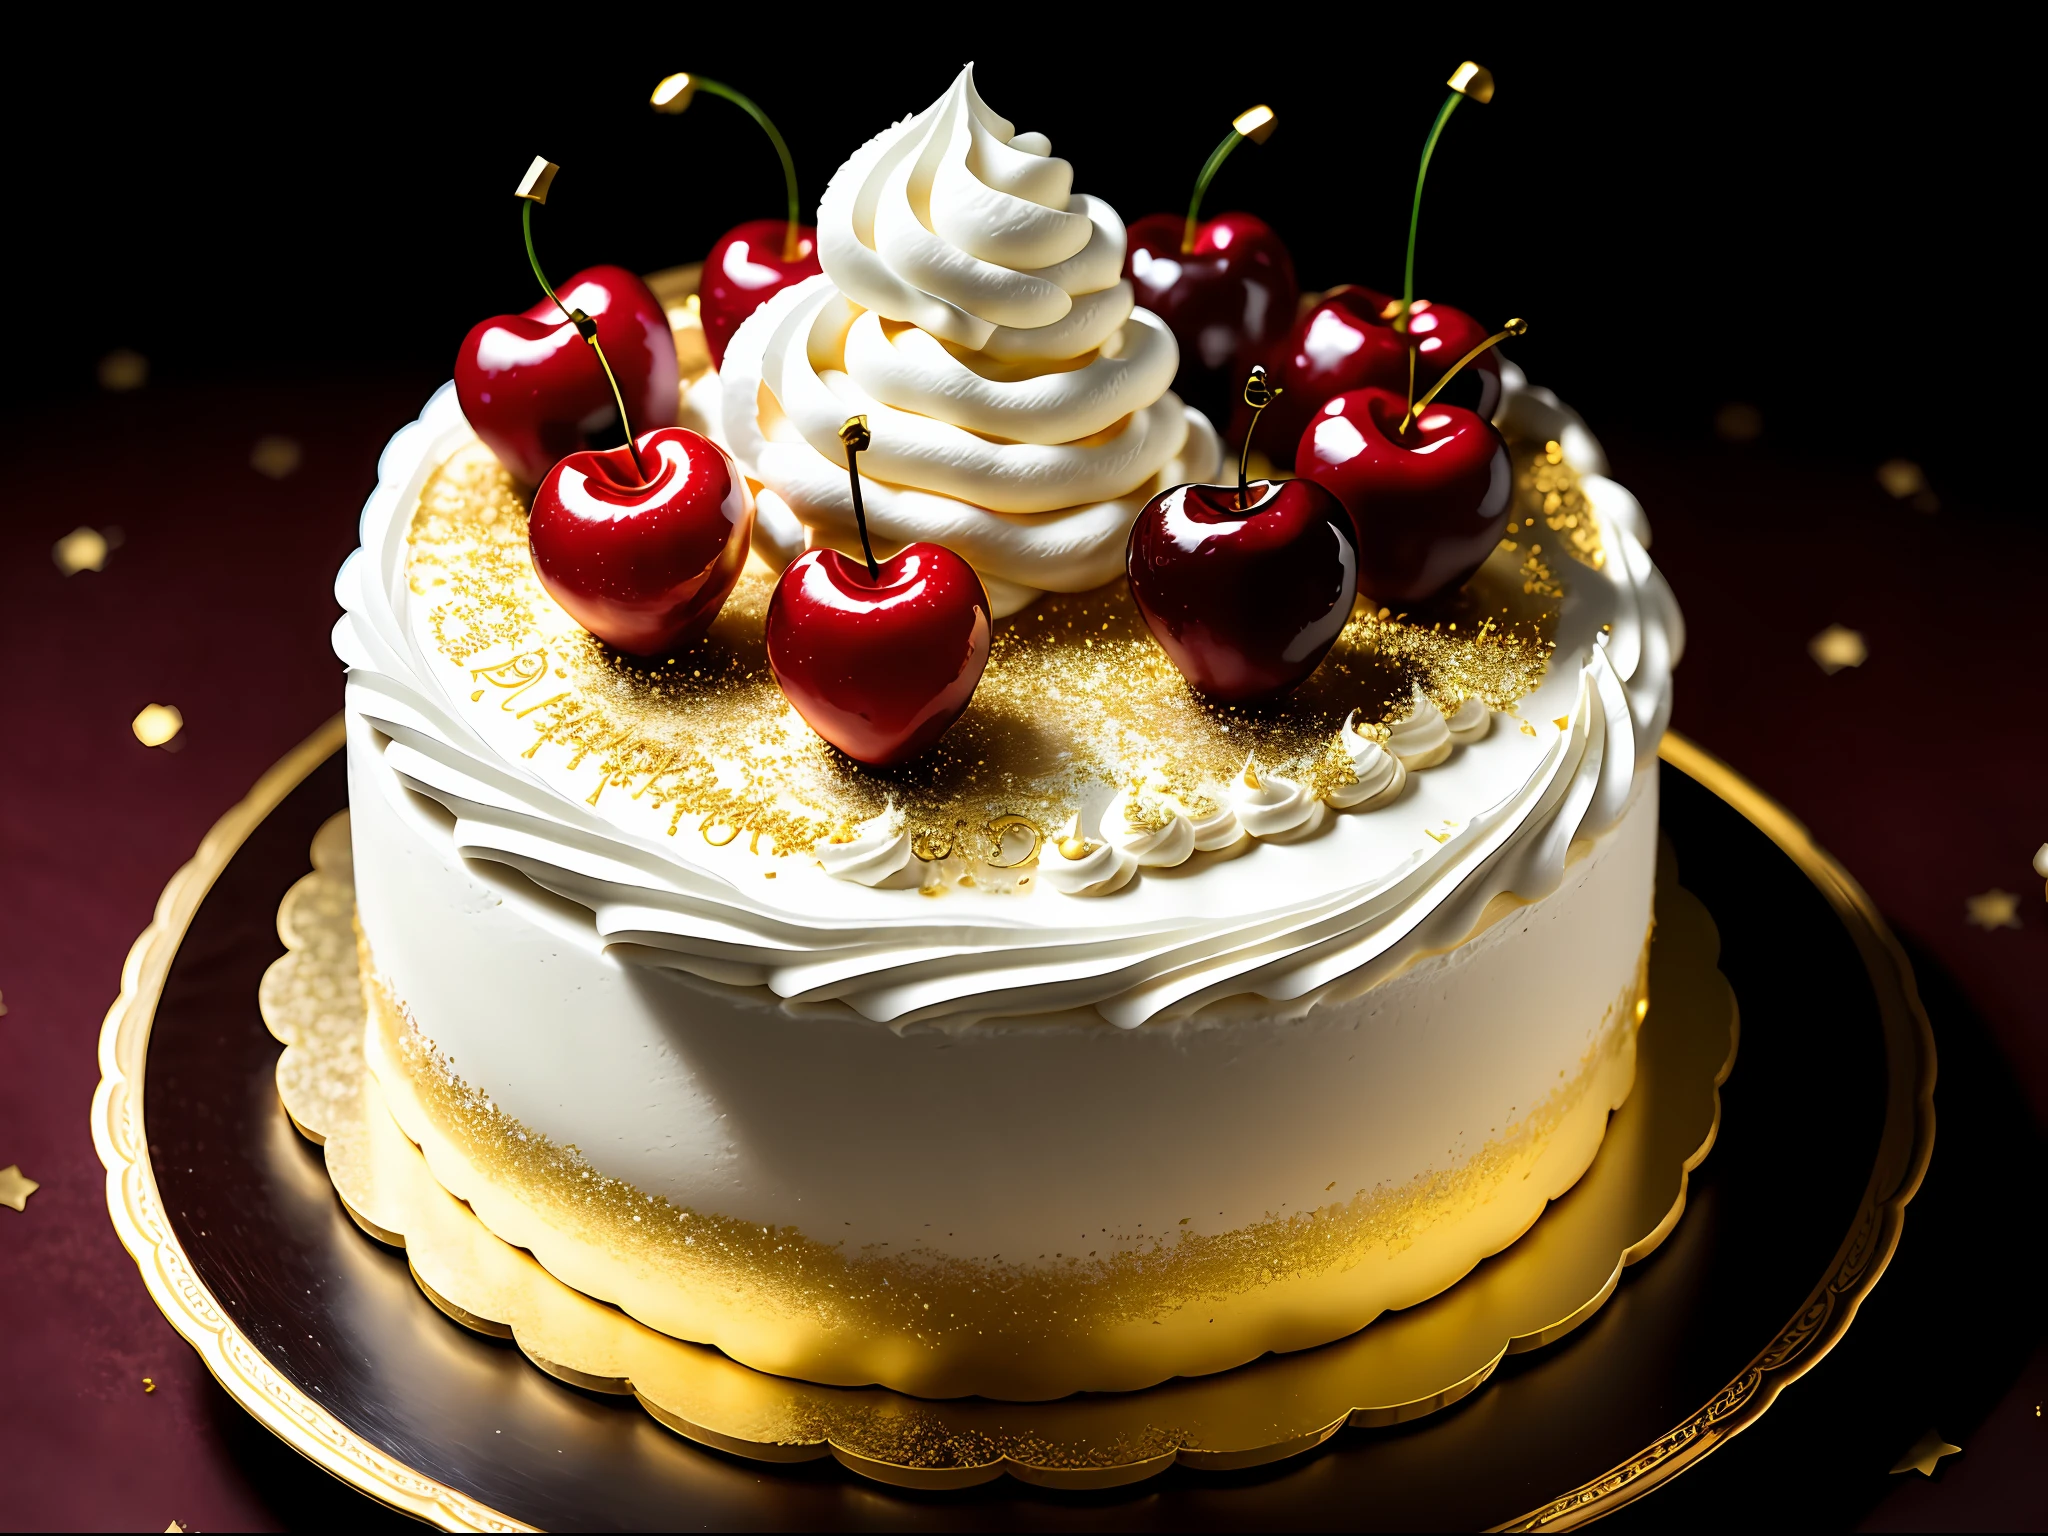 ホイップクリームたっぷりのファンタジーケーキ, さくらんぼ, 金の装飾品, 暗い背景